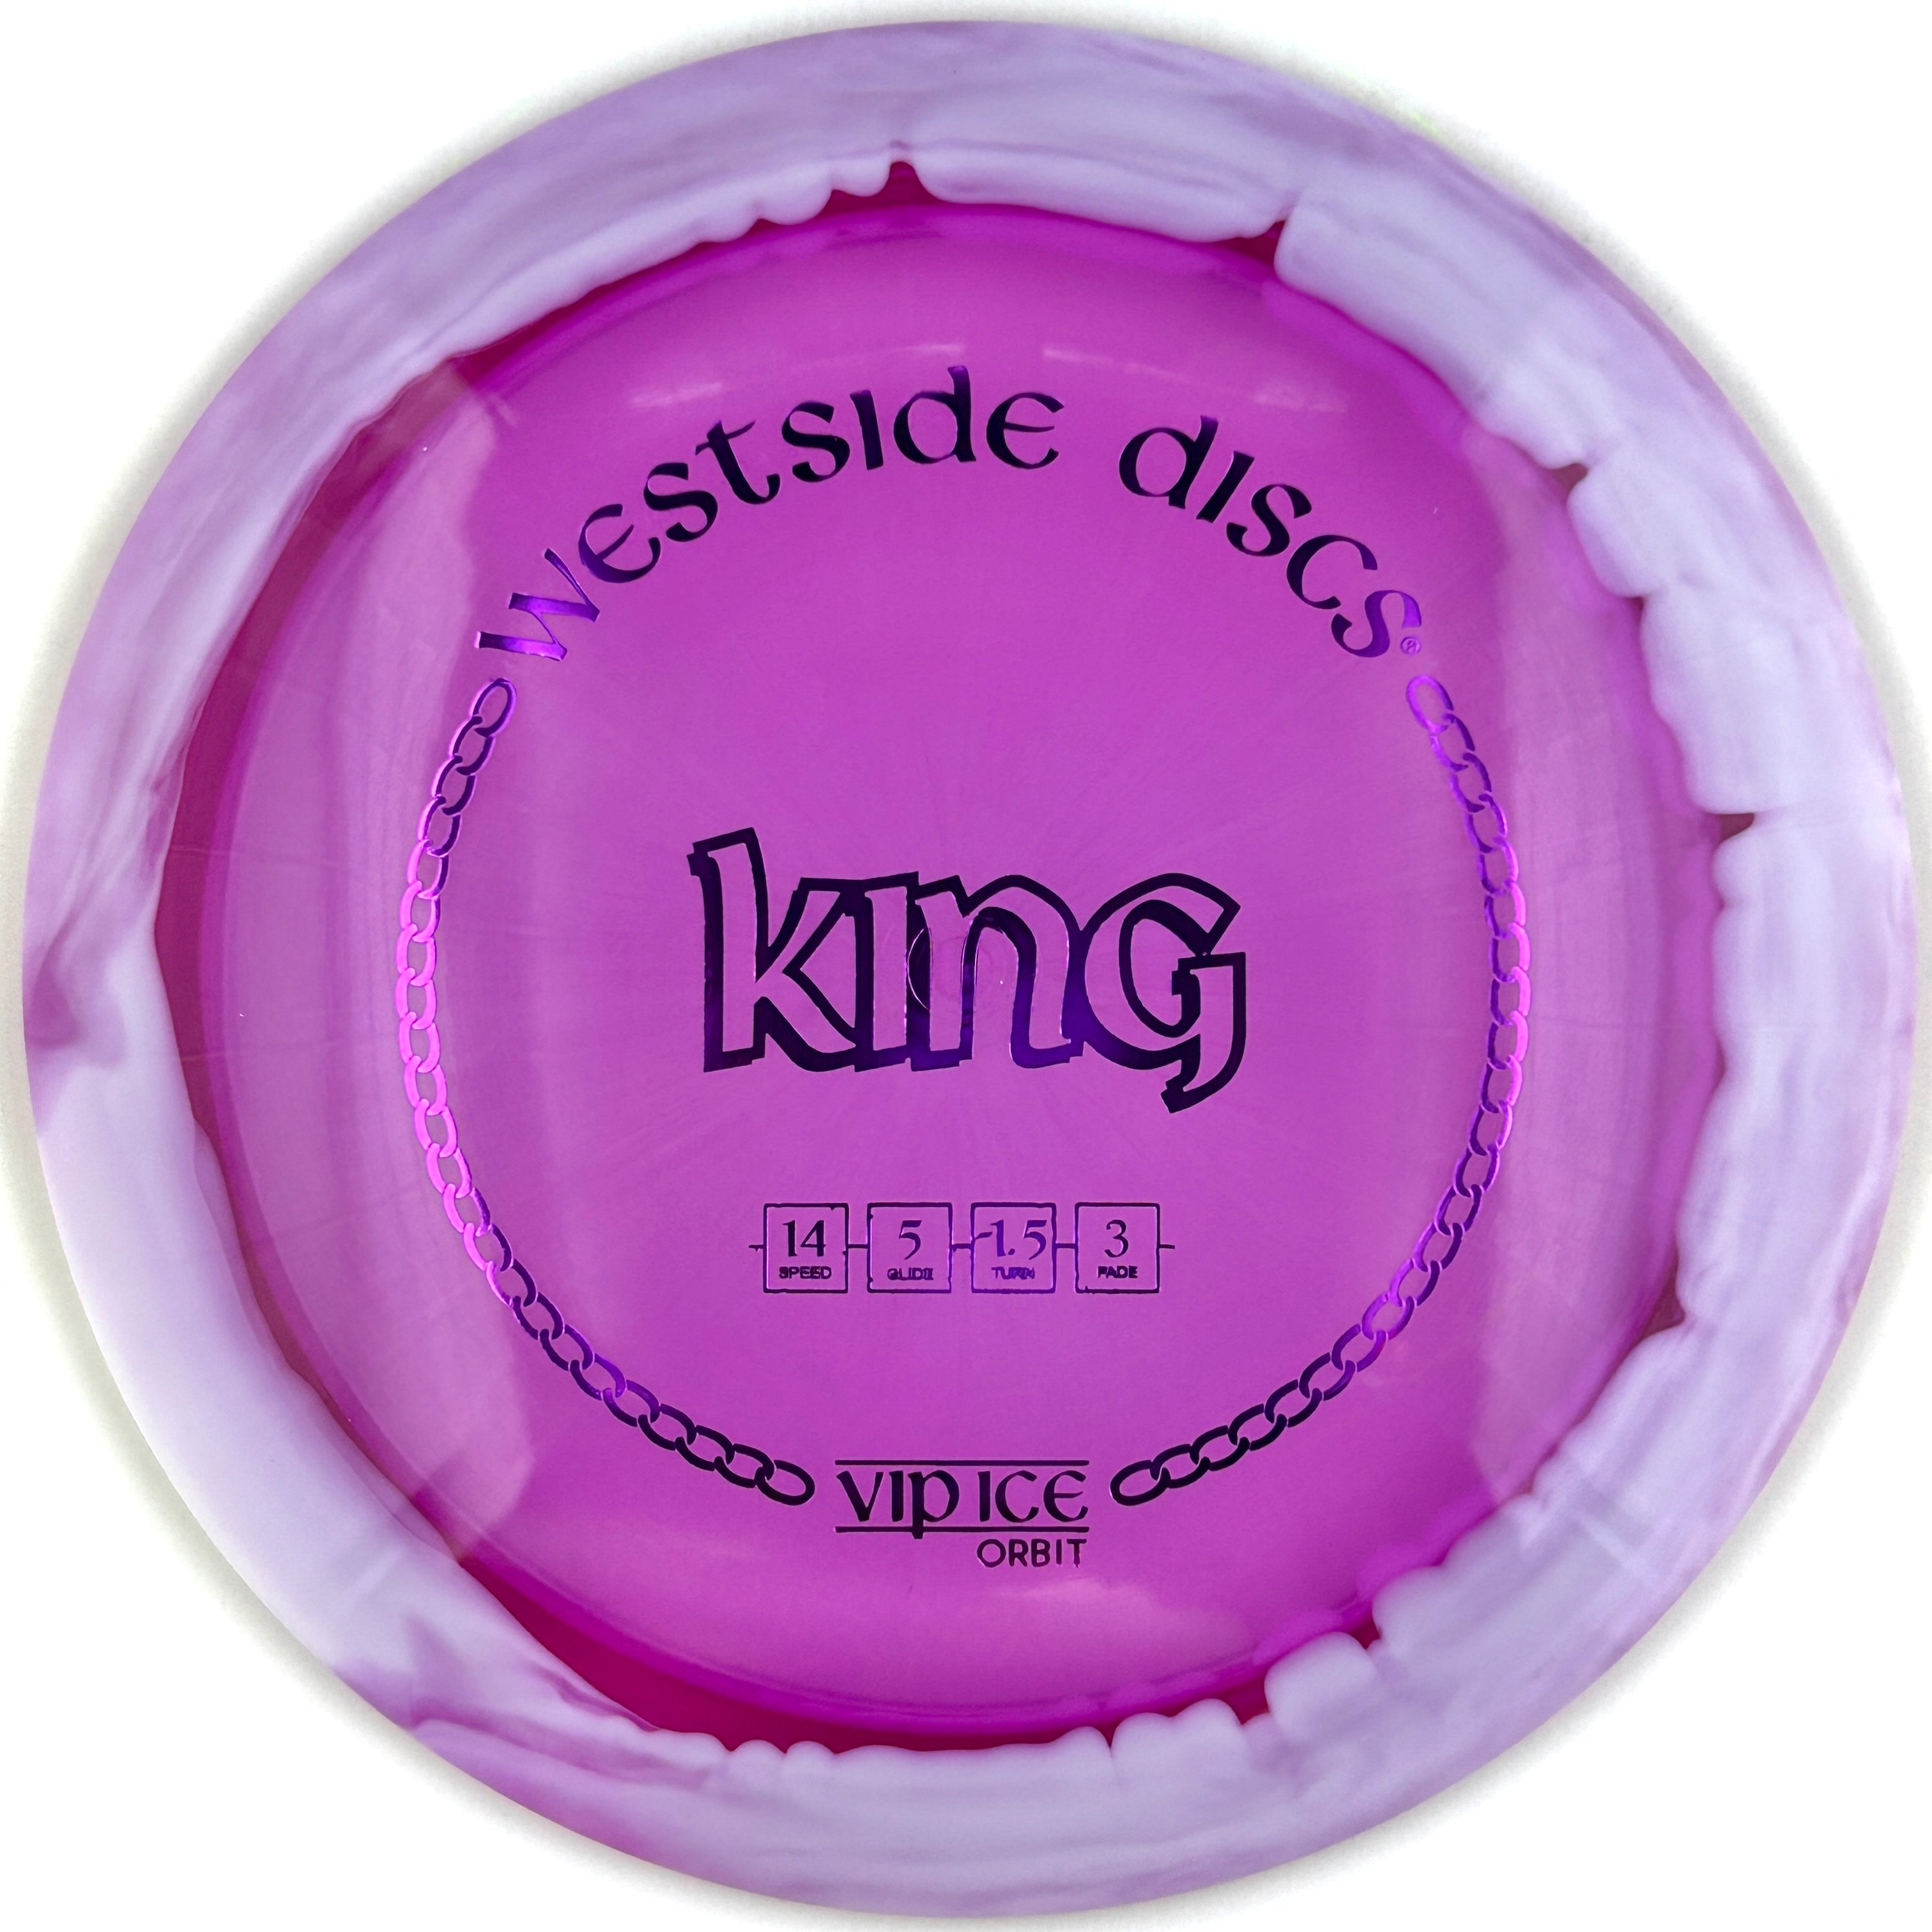 Westside Discs VIP Ice-Orbit King (Distance Driver)